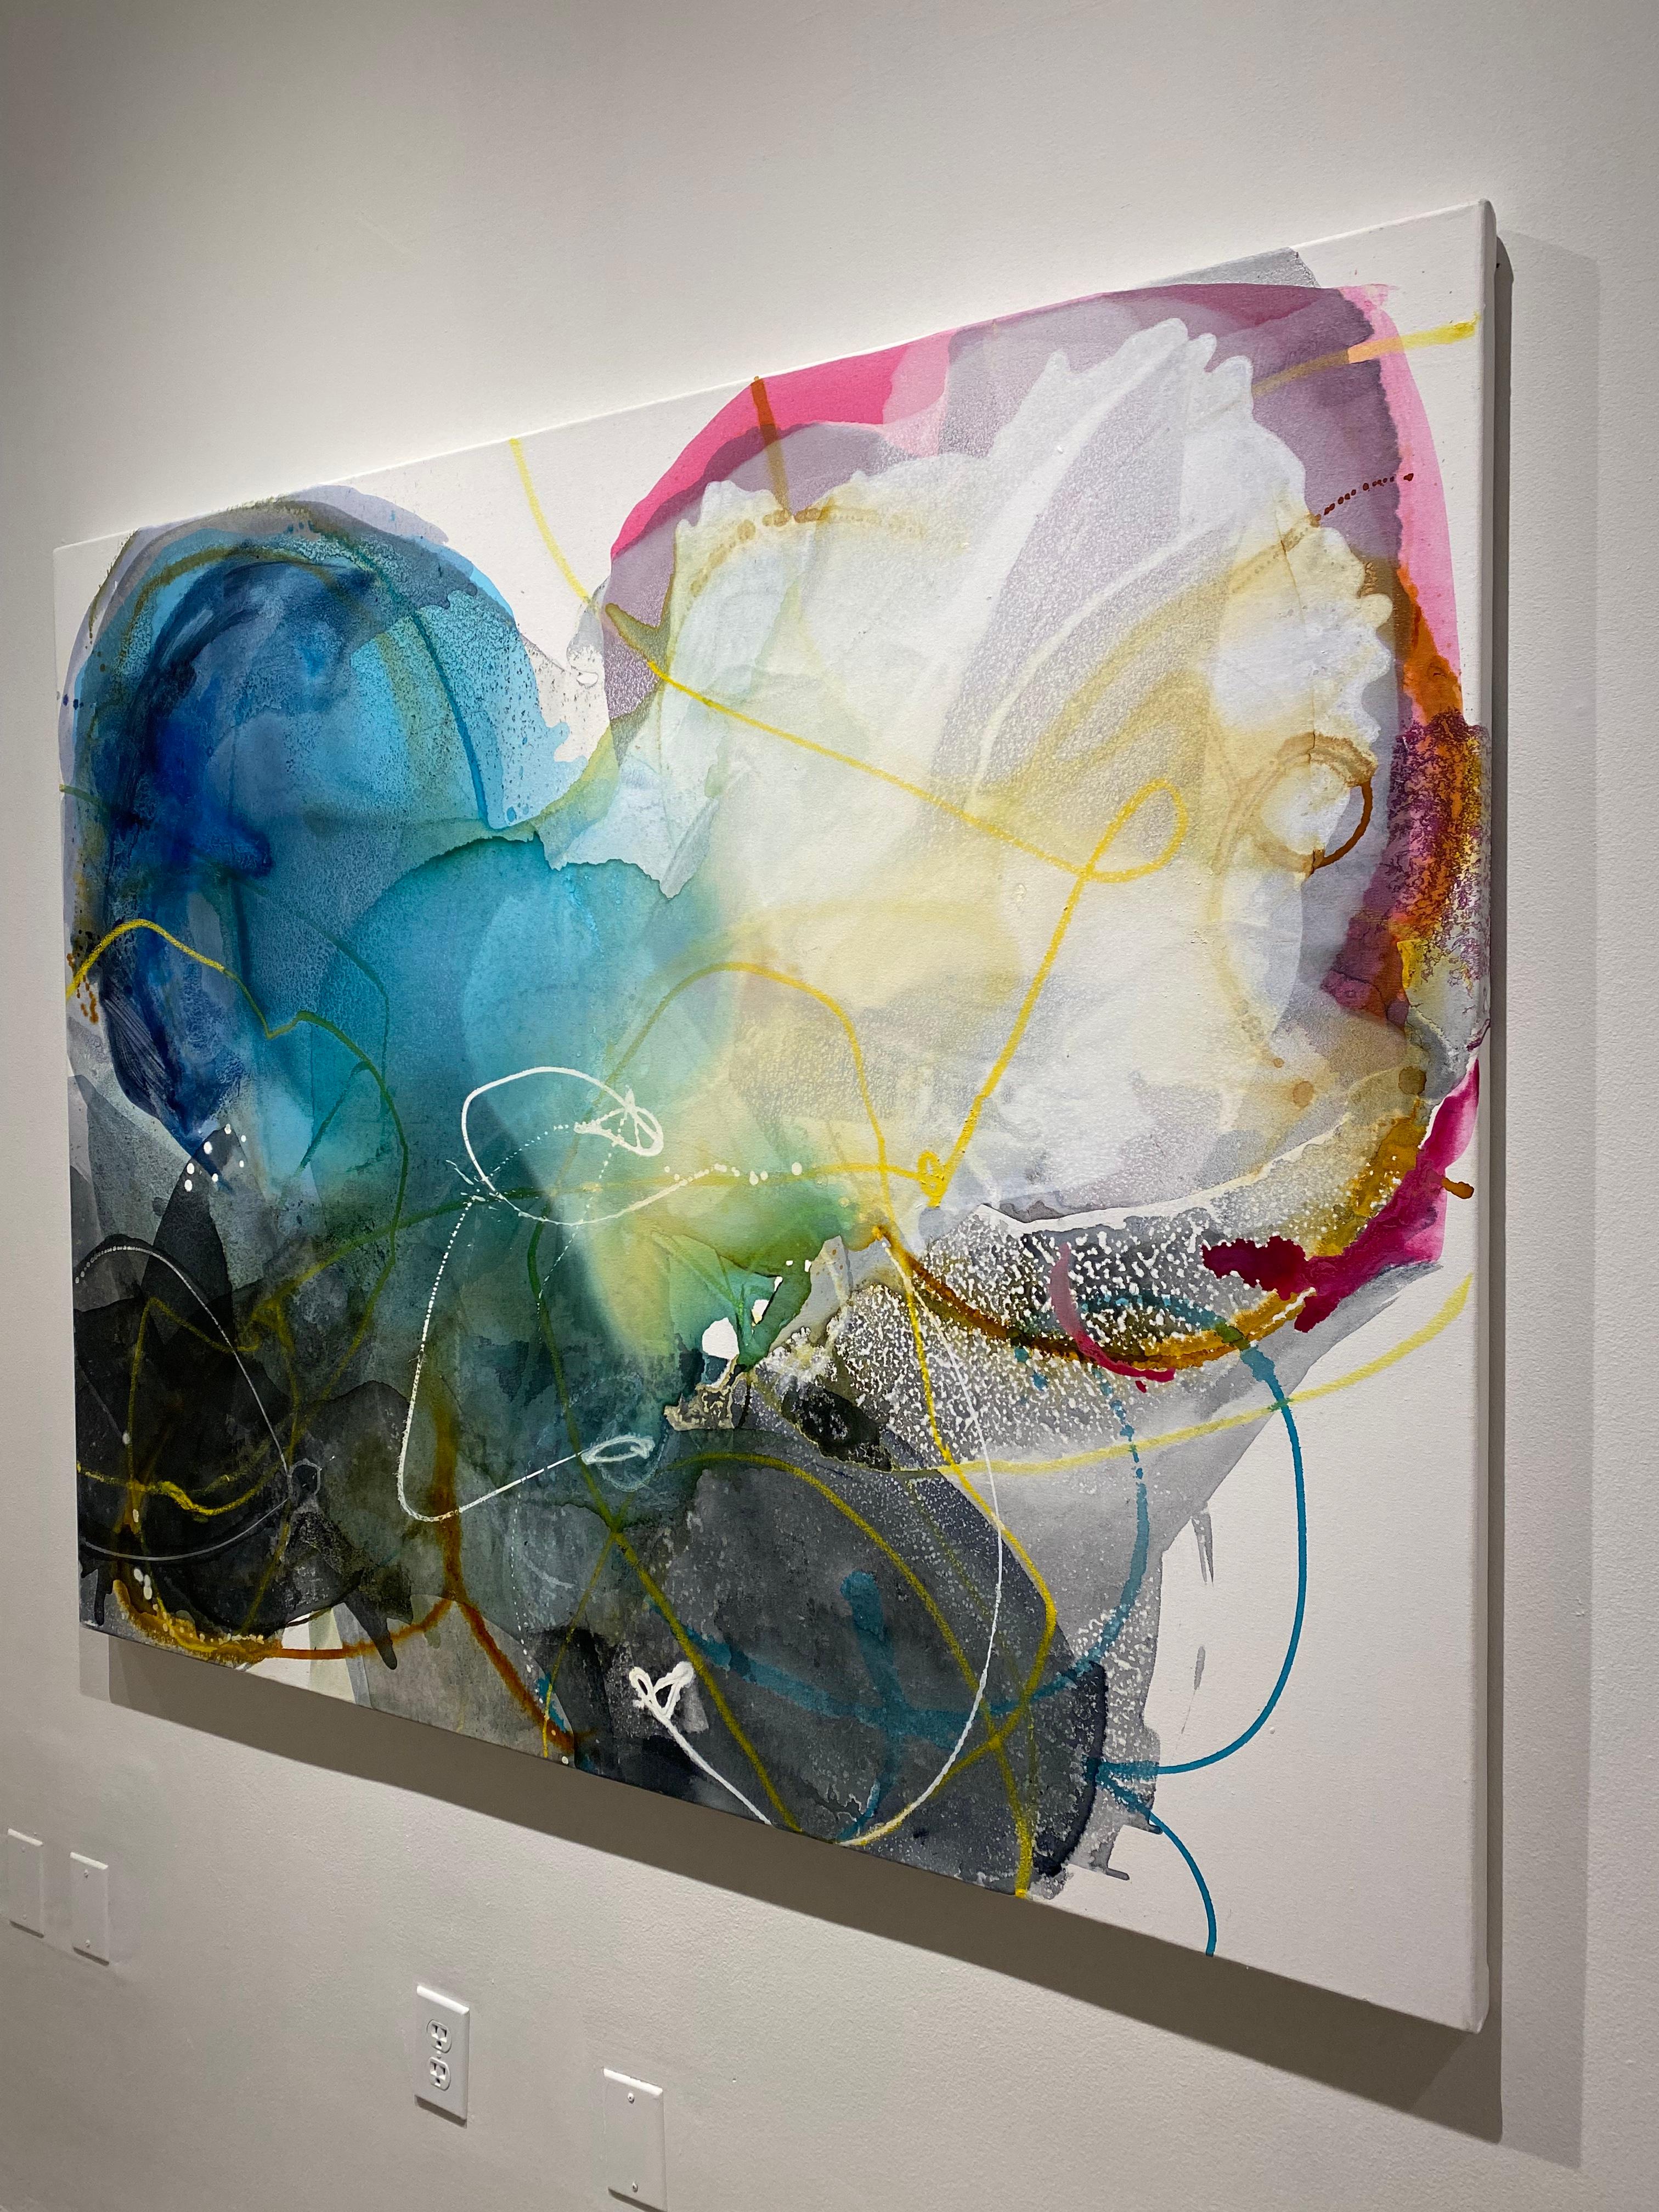 Shadow Blooms 3, großes abstraktes Gemälde auf Leinwand, geschichtet mit leuchtenden Farben (Abstrakt), Mixed Media Art, von Liz Barber